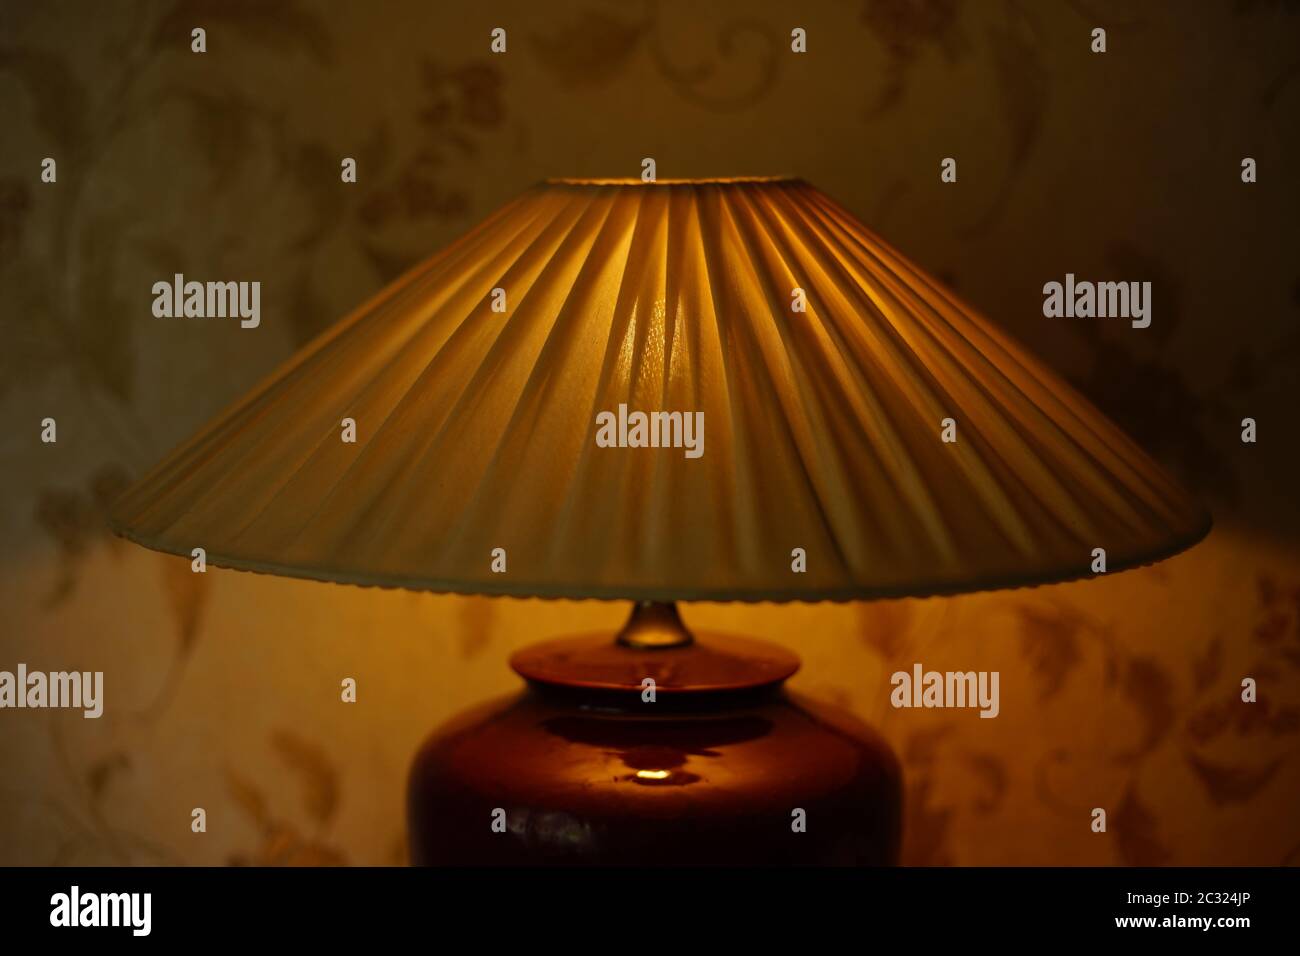 Faltenlampenschirm mit warmem Licht im dunklen Raum, Nahaufnahme. Stockfoto